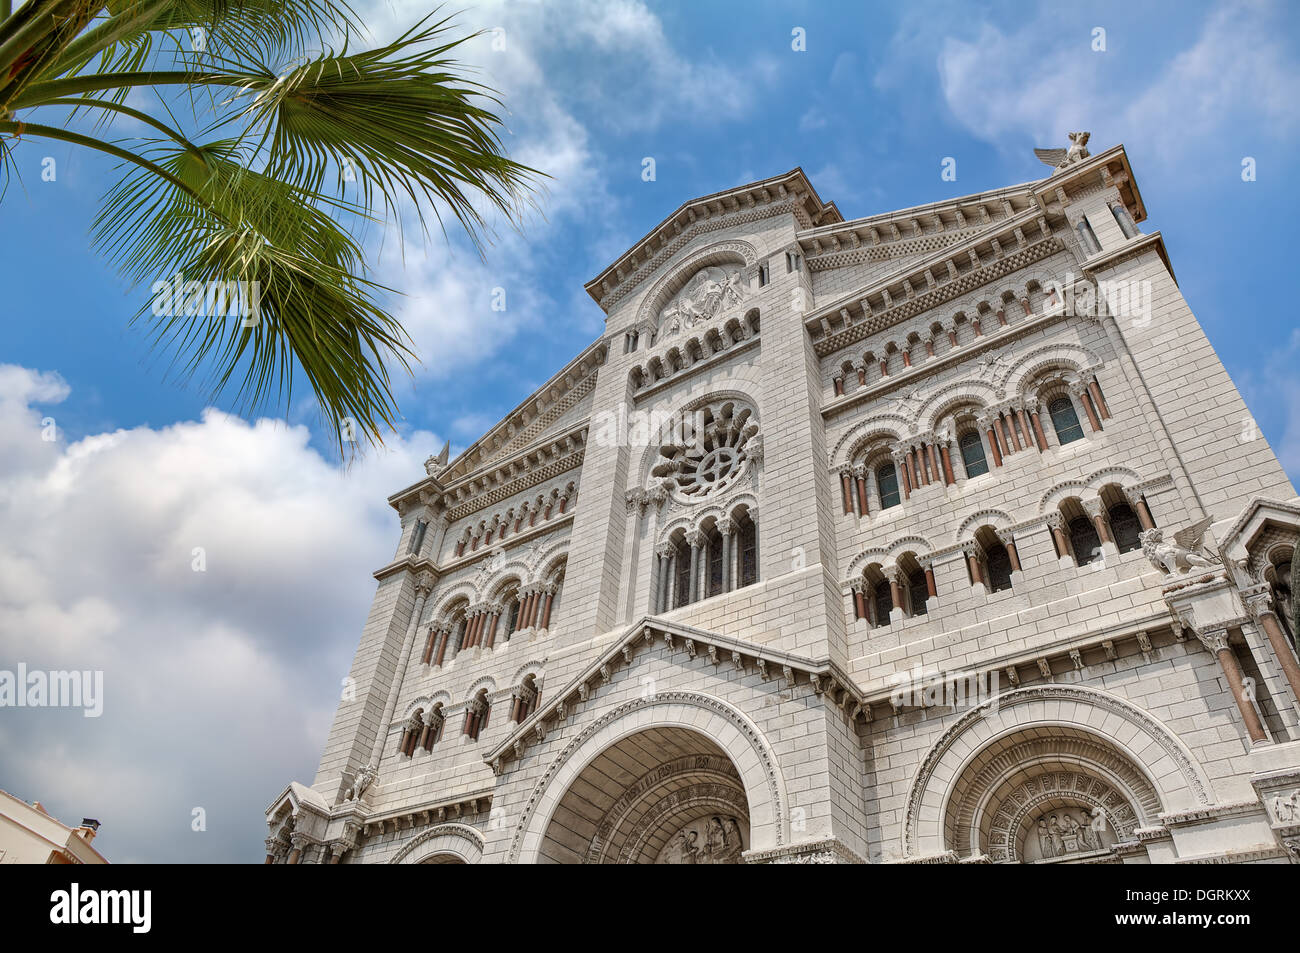 La facciata della famosa cattedrale di San Nicola a Monaco-Ville, Monaco (vista dal basso). Foto Stock